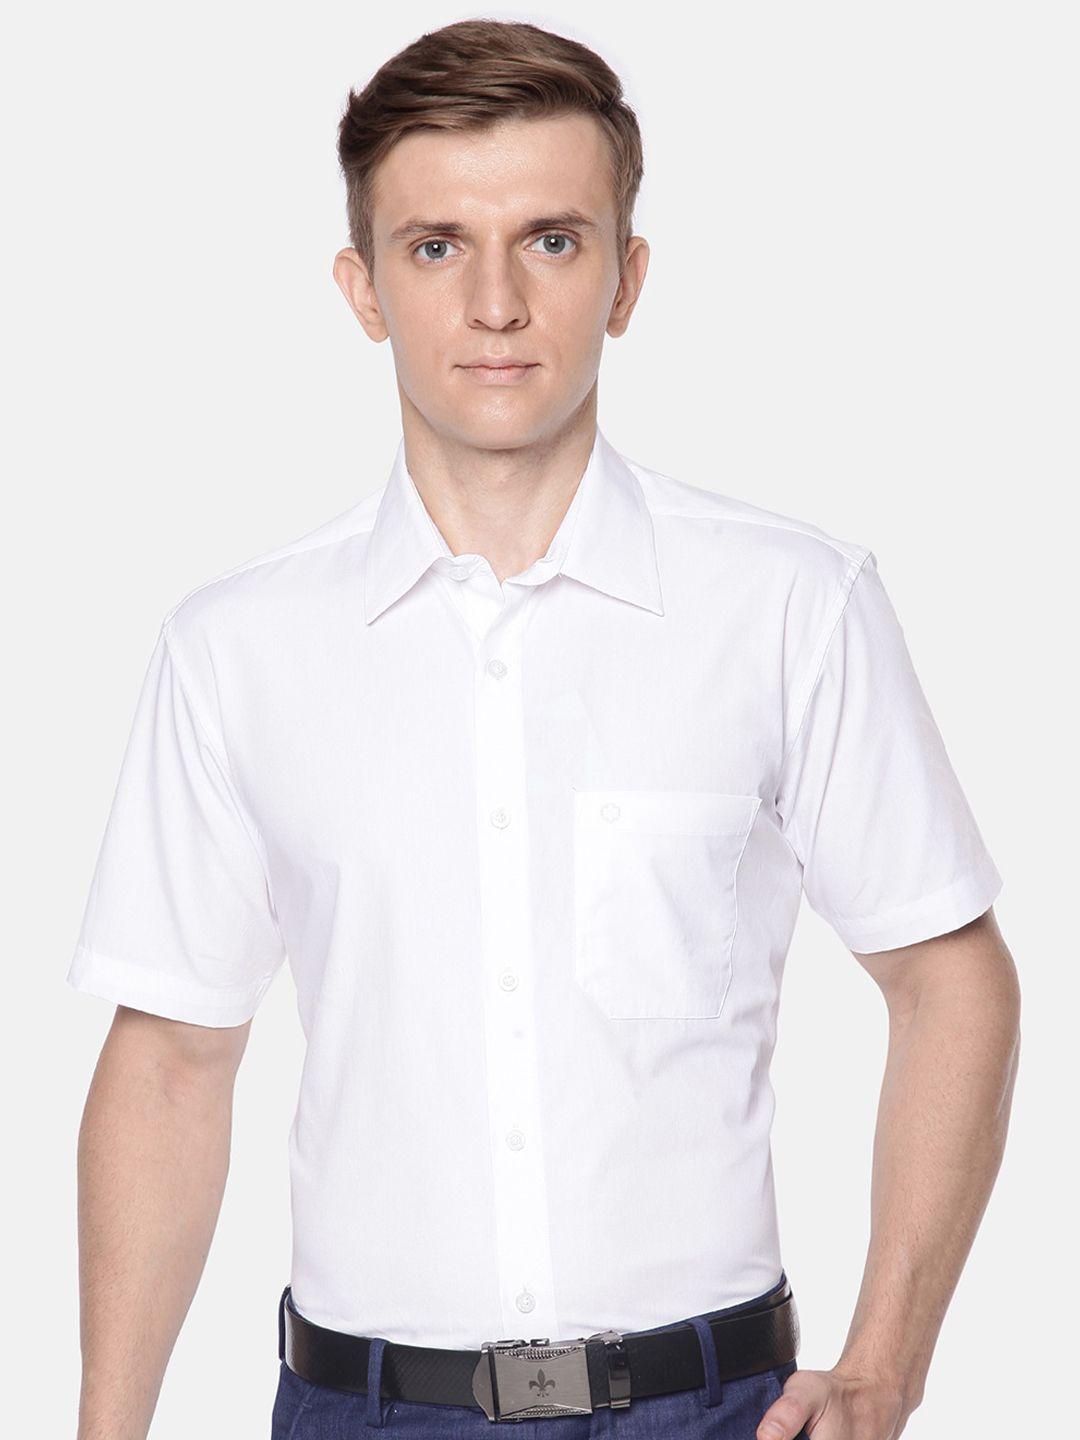 jansons-men-pure-cotton-formal-shirt